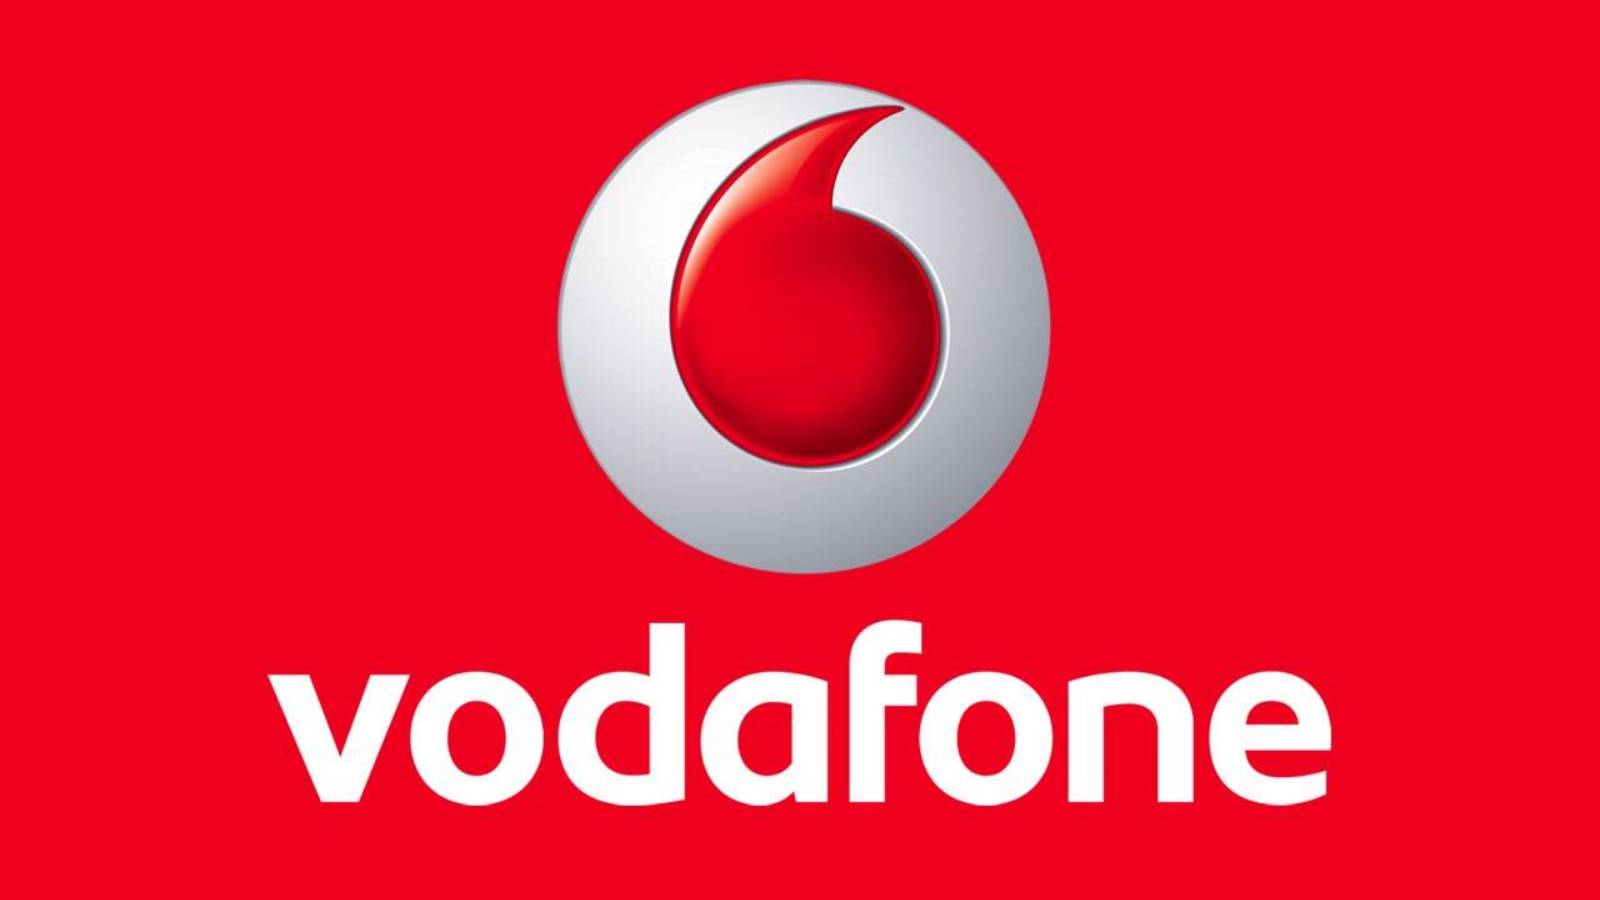 Vodafone kündigt WICHTIGE Änderungen an Abonnements in Rumänien an